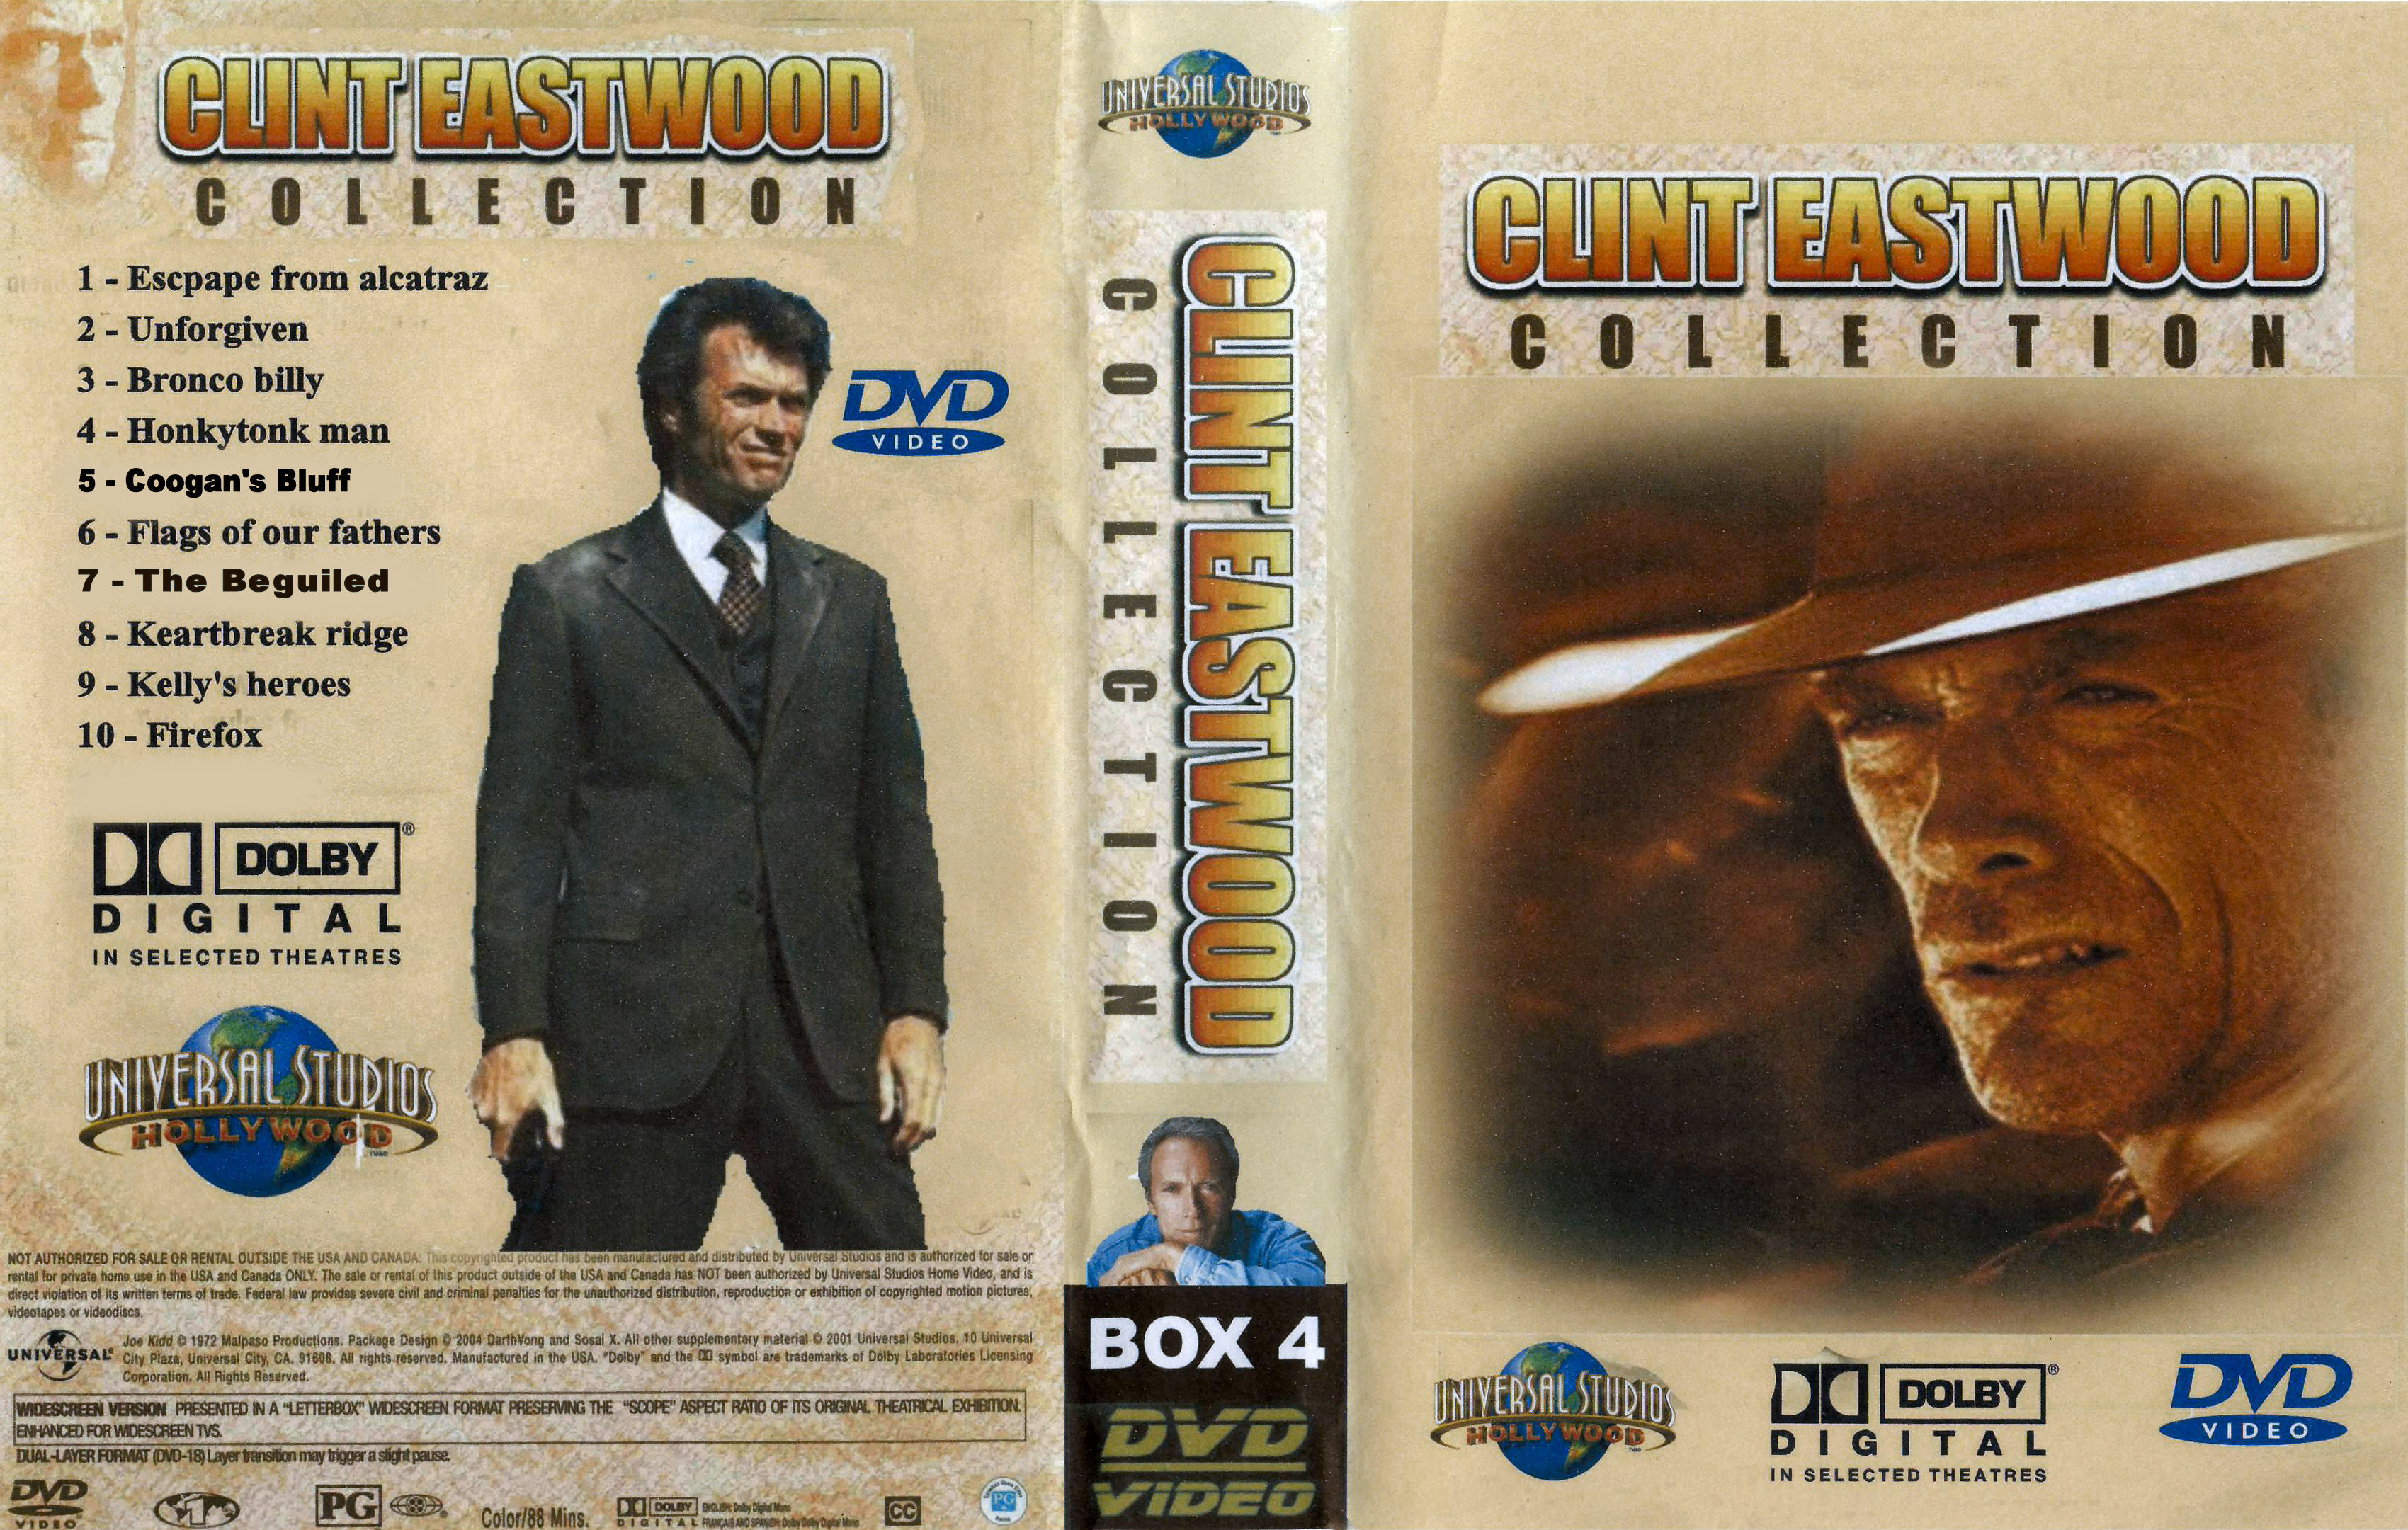 Clint Eastwood Collectie Box 4 DvD 9 van 10